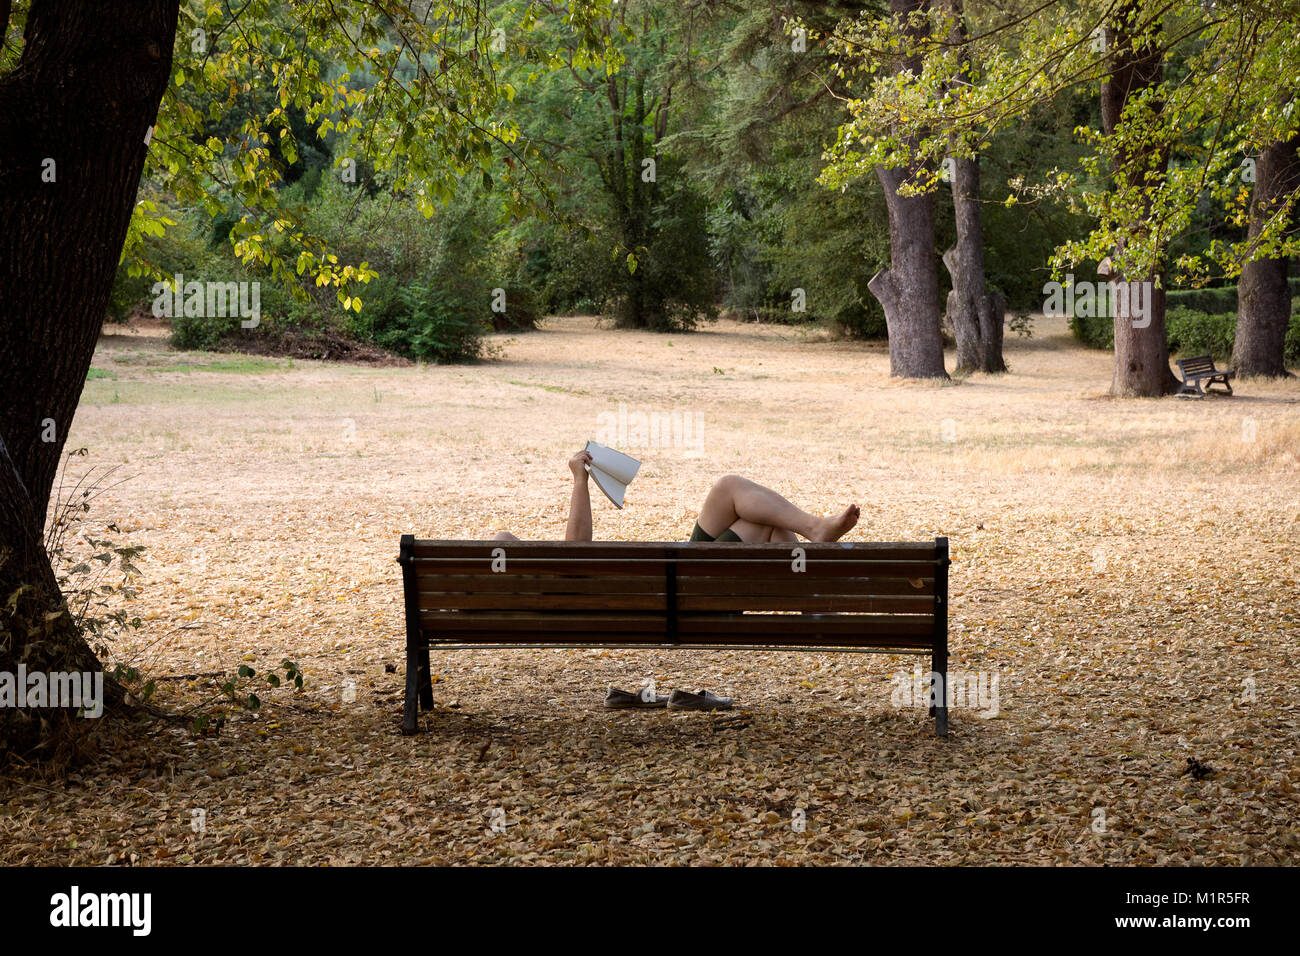 Roma, italia: Un uomo sta leggendo un libro sdraiato su una panchina in un parco di Roma Foto Stock